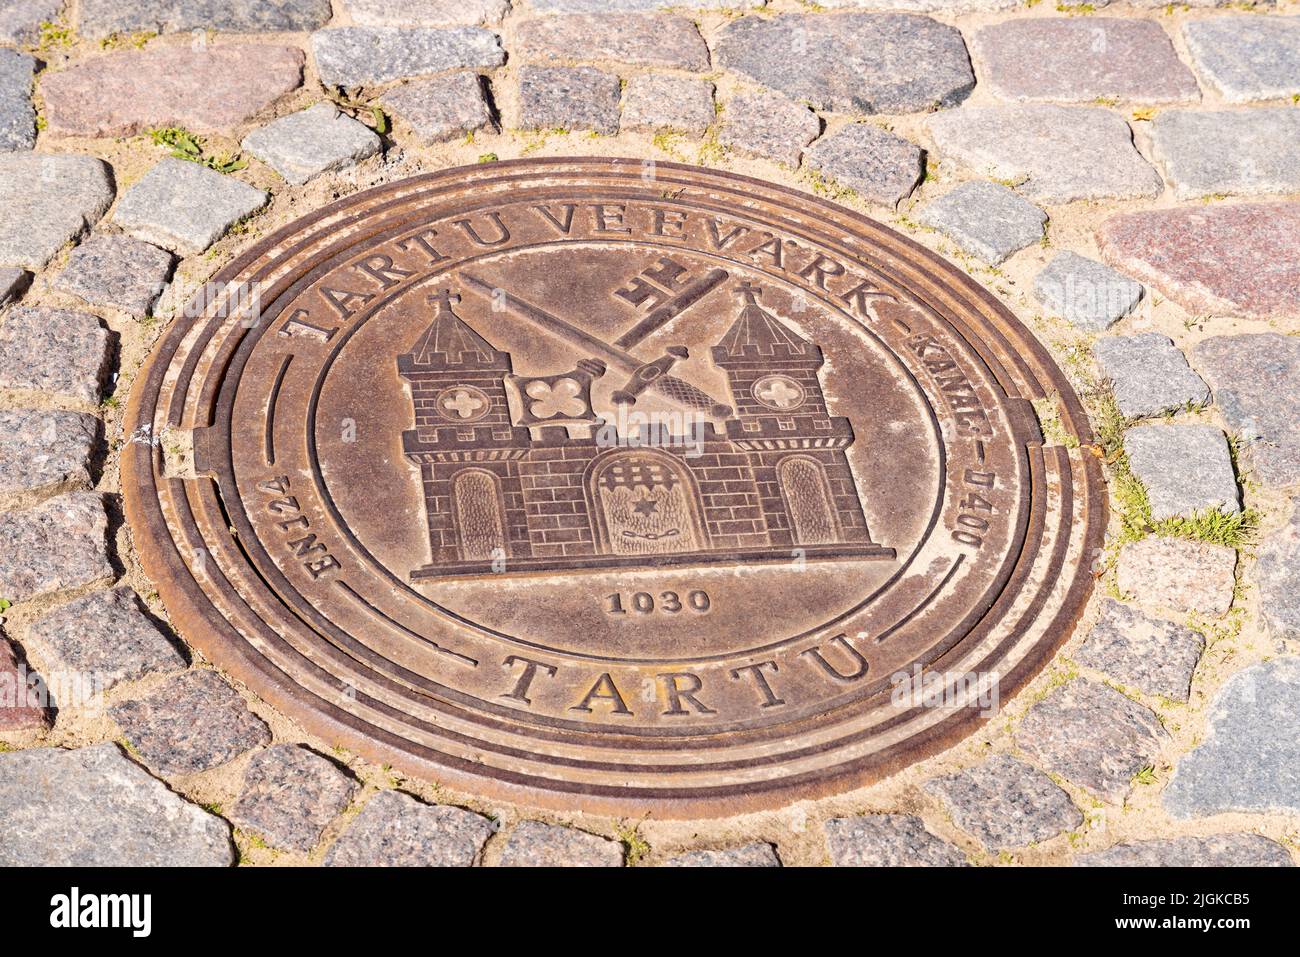 Armoiries de la ville de Tartu, Estonie, sur une plaque métallique installée dans la route, Tartu, Estonie États baltes, Europe Banque D'Images